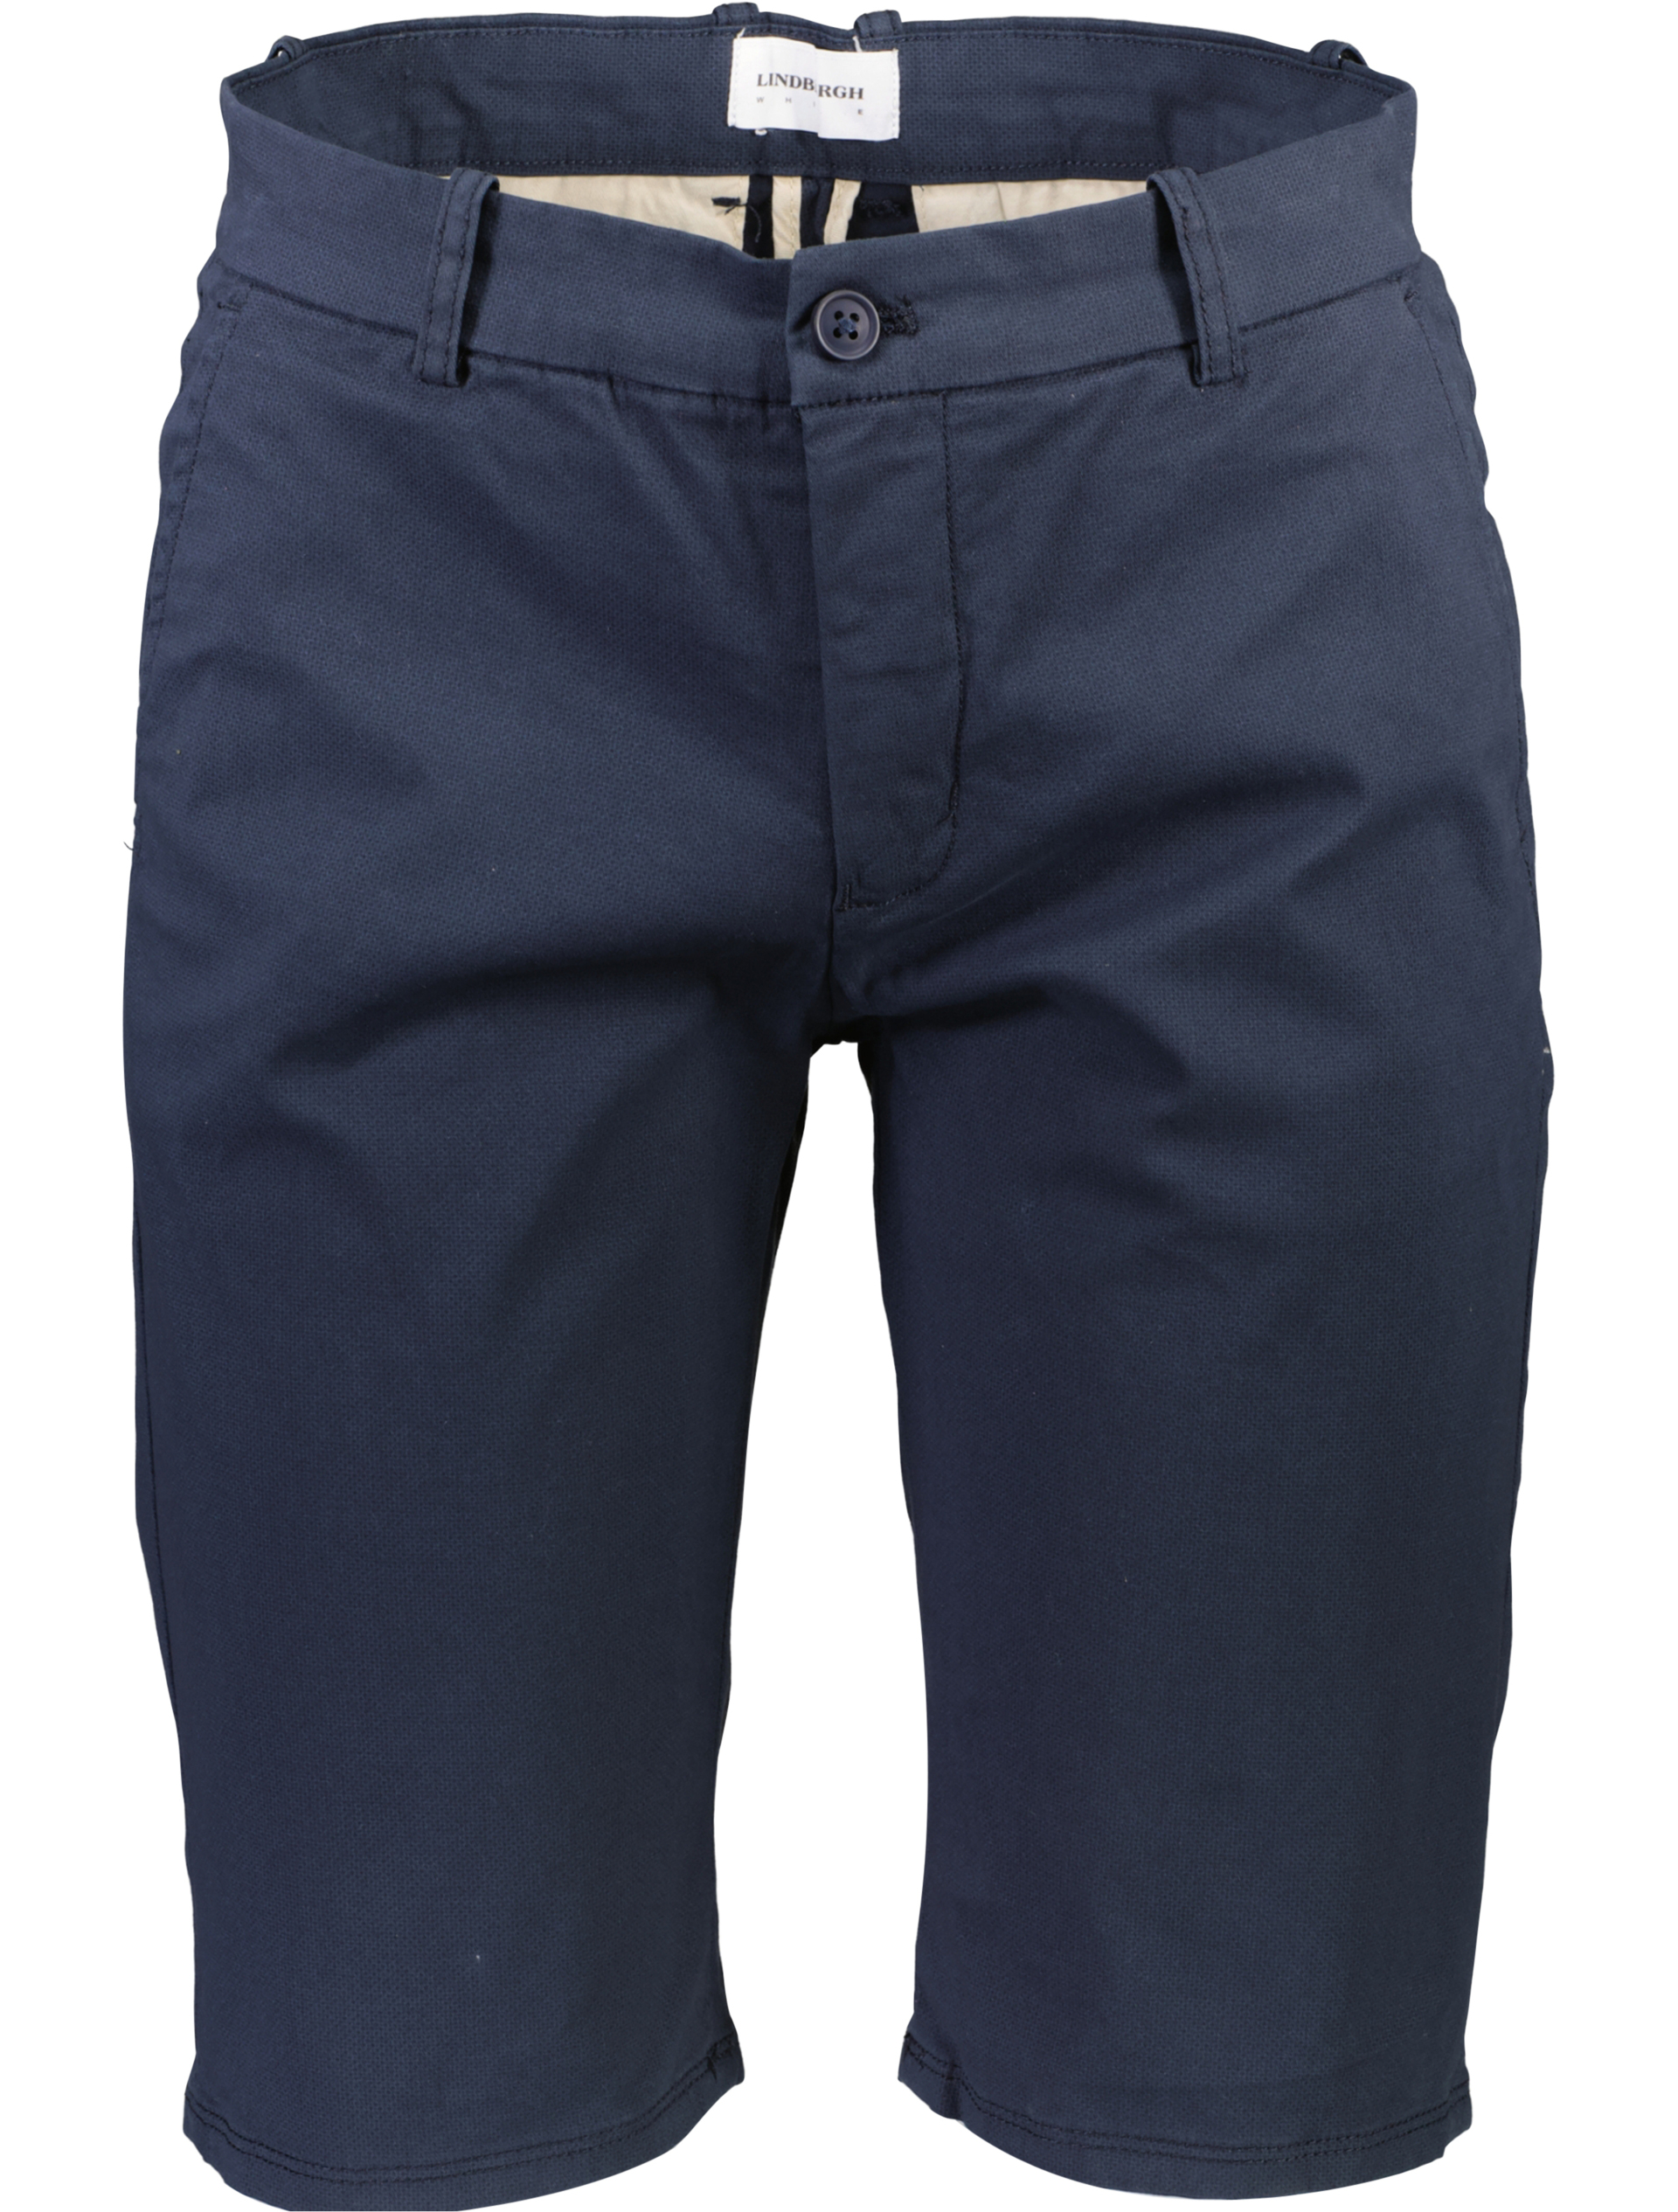 Lindbergh Chino korte broek blauw / navy